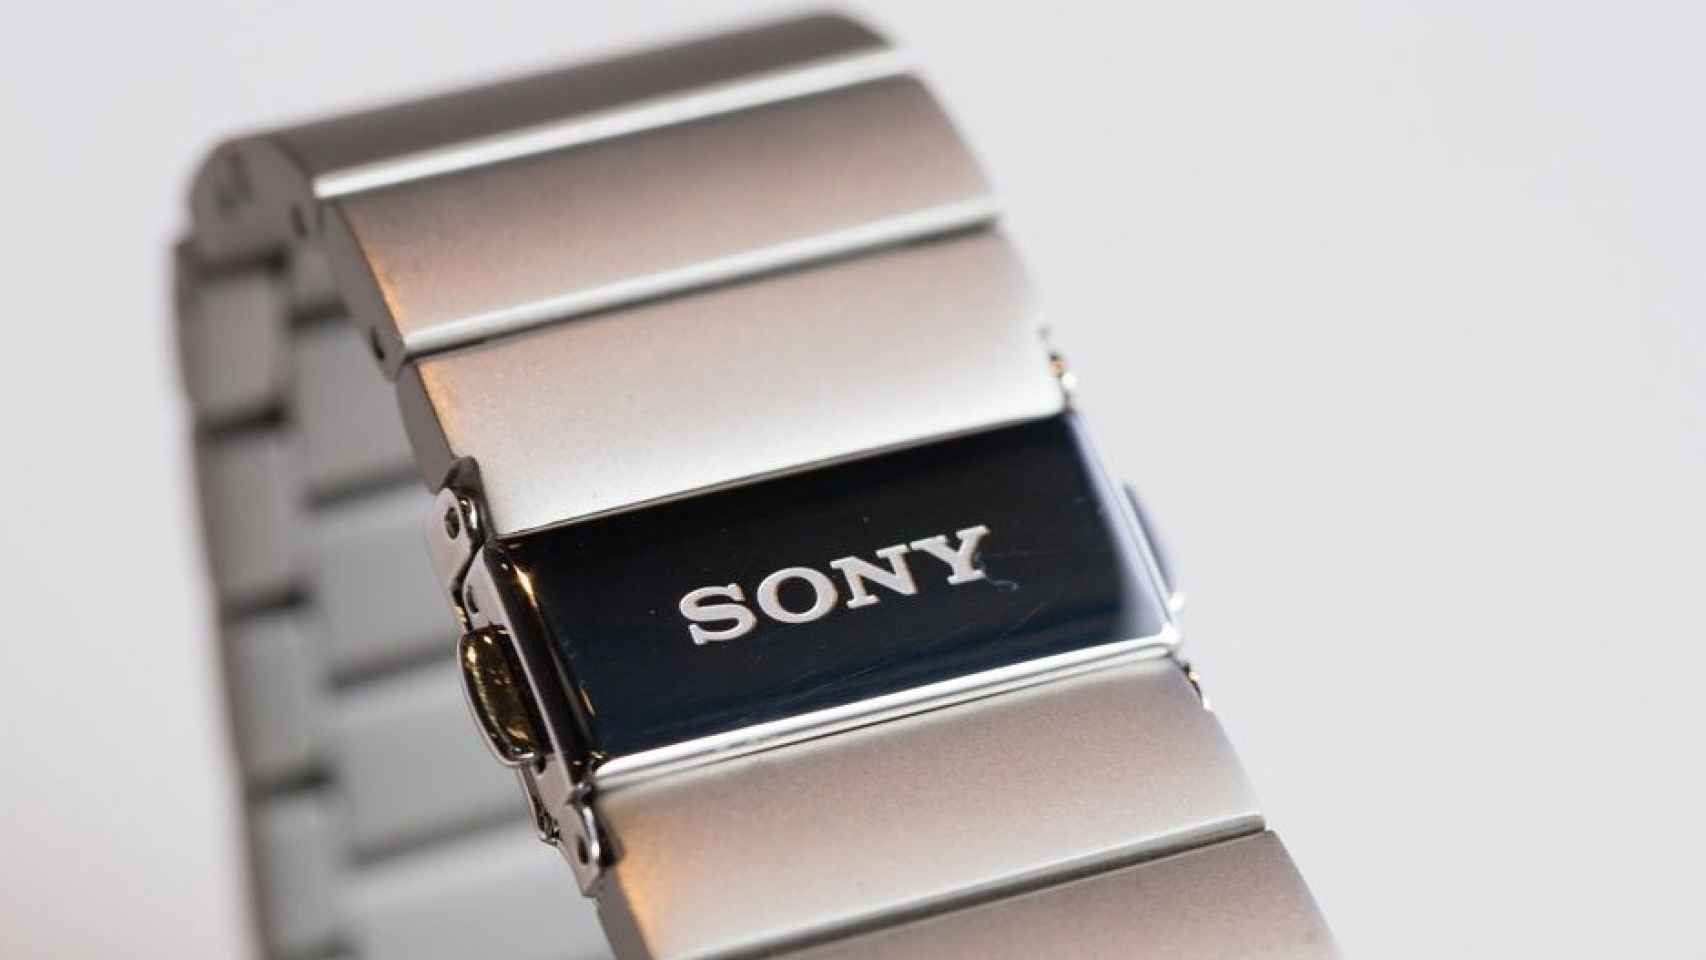 Sony (móvil) planea recortar hasta 1000 puestos de trabajo